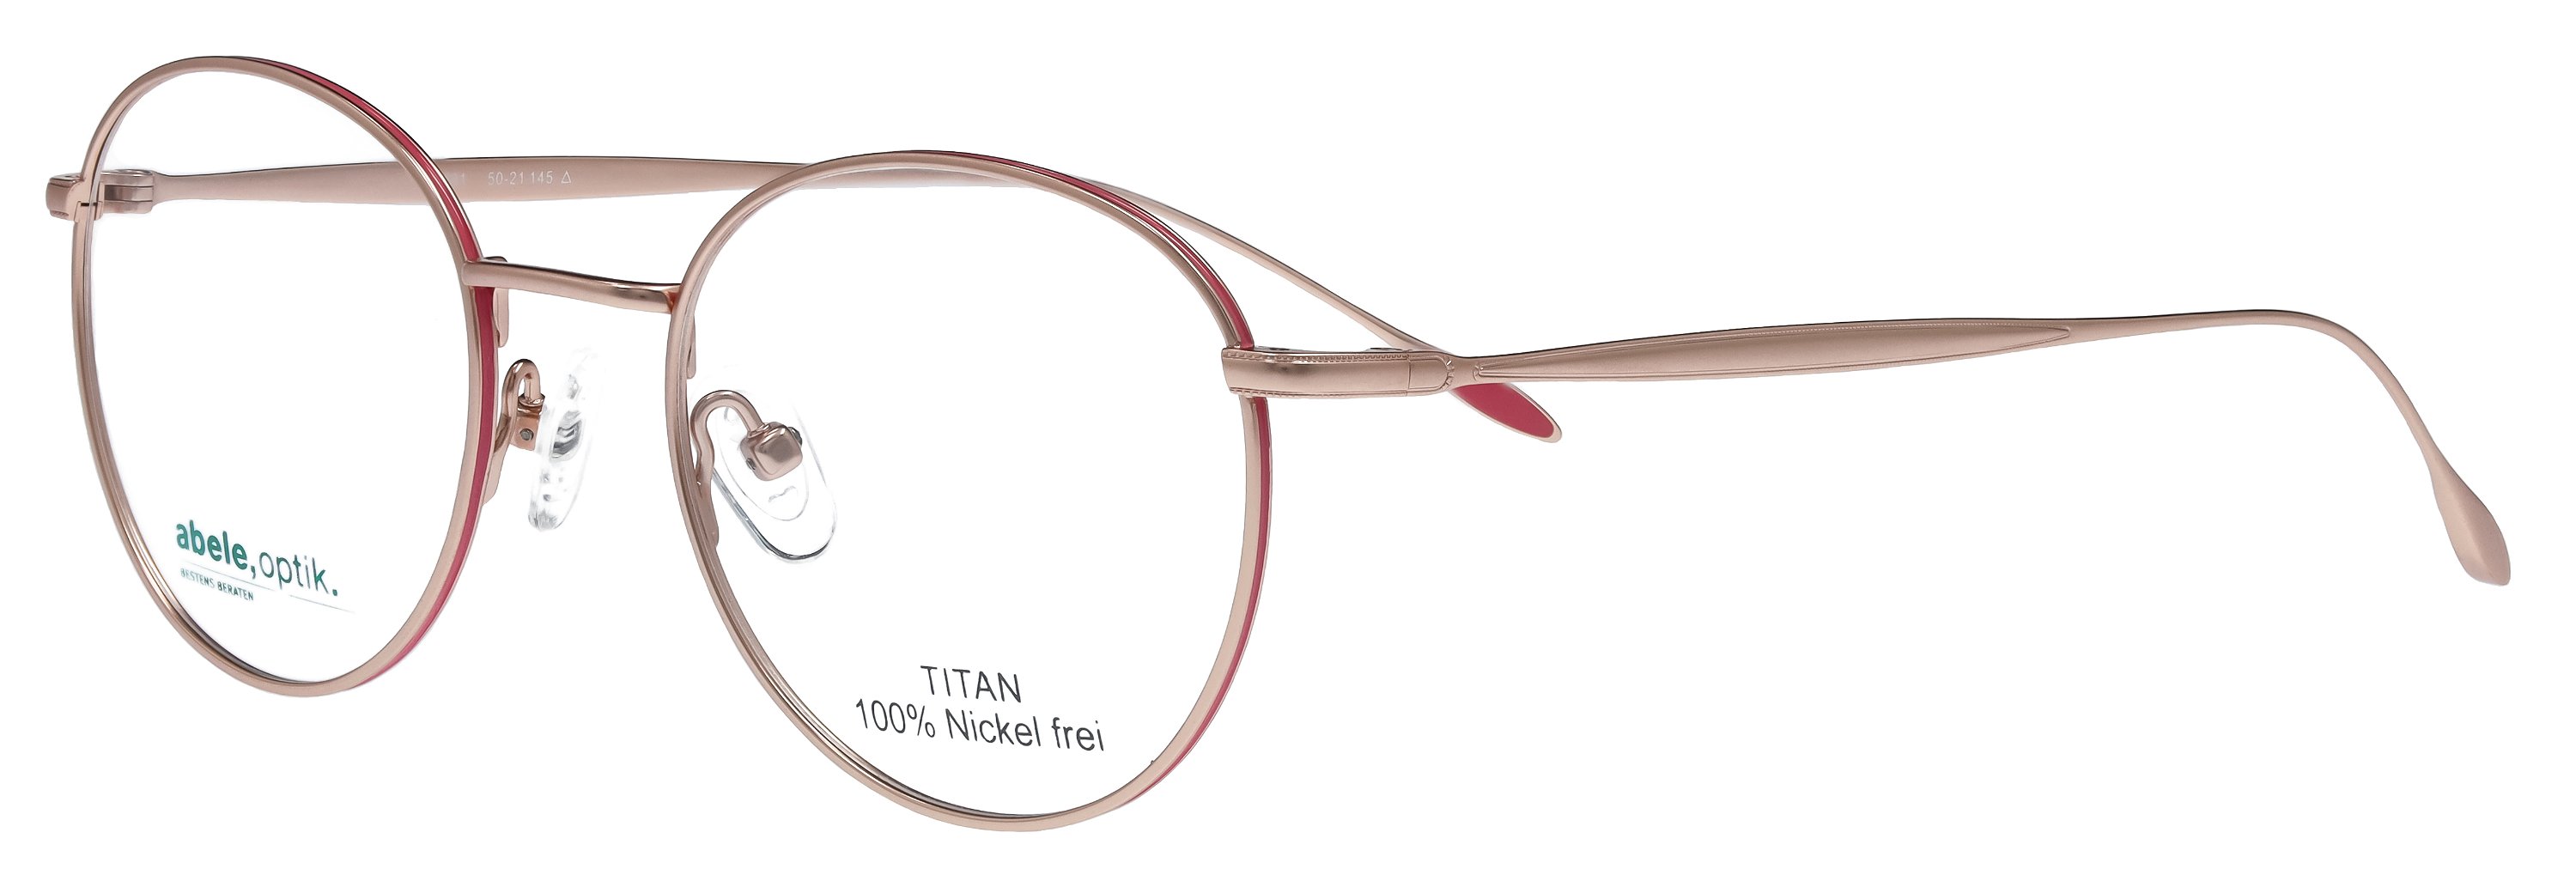 abele optik Brille für Damen in roségold / pink 147691 